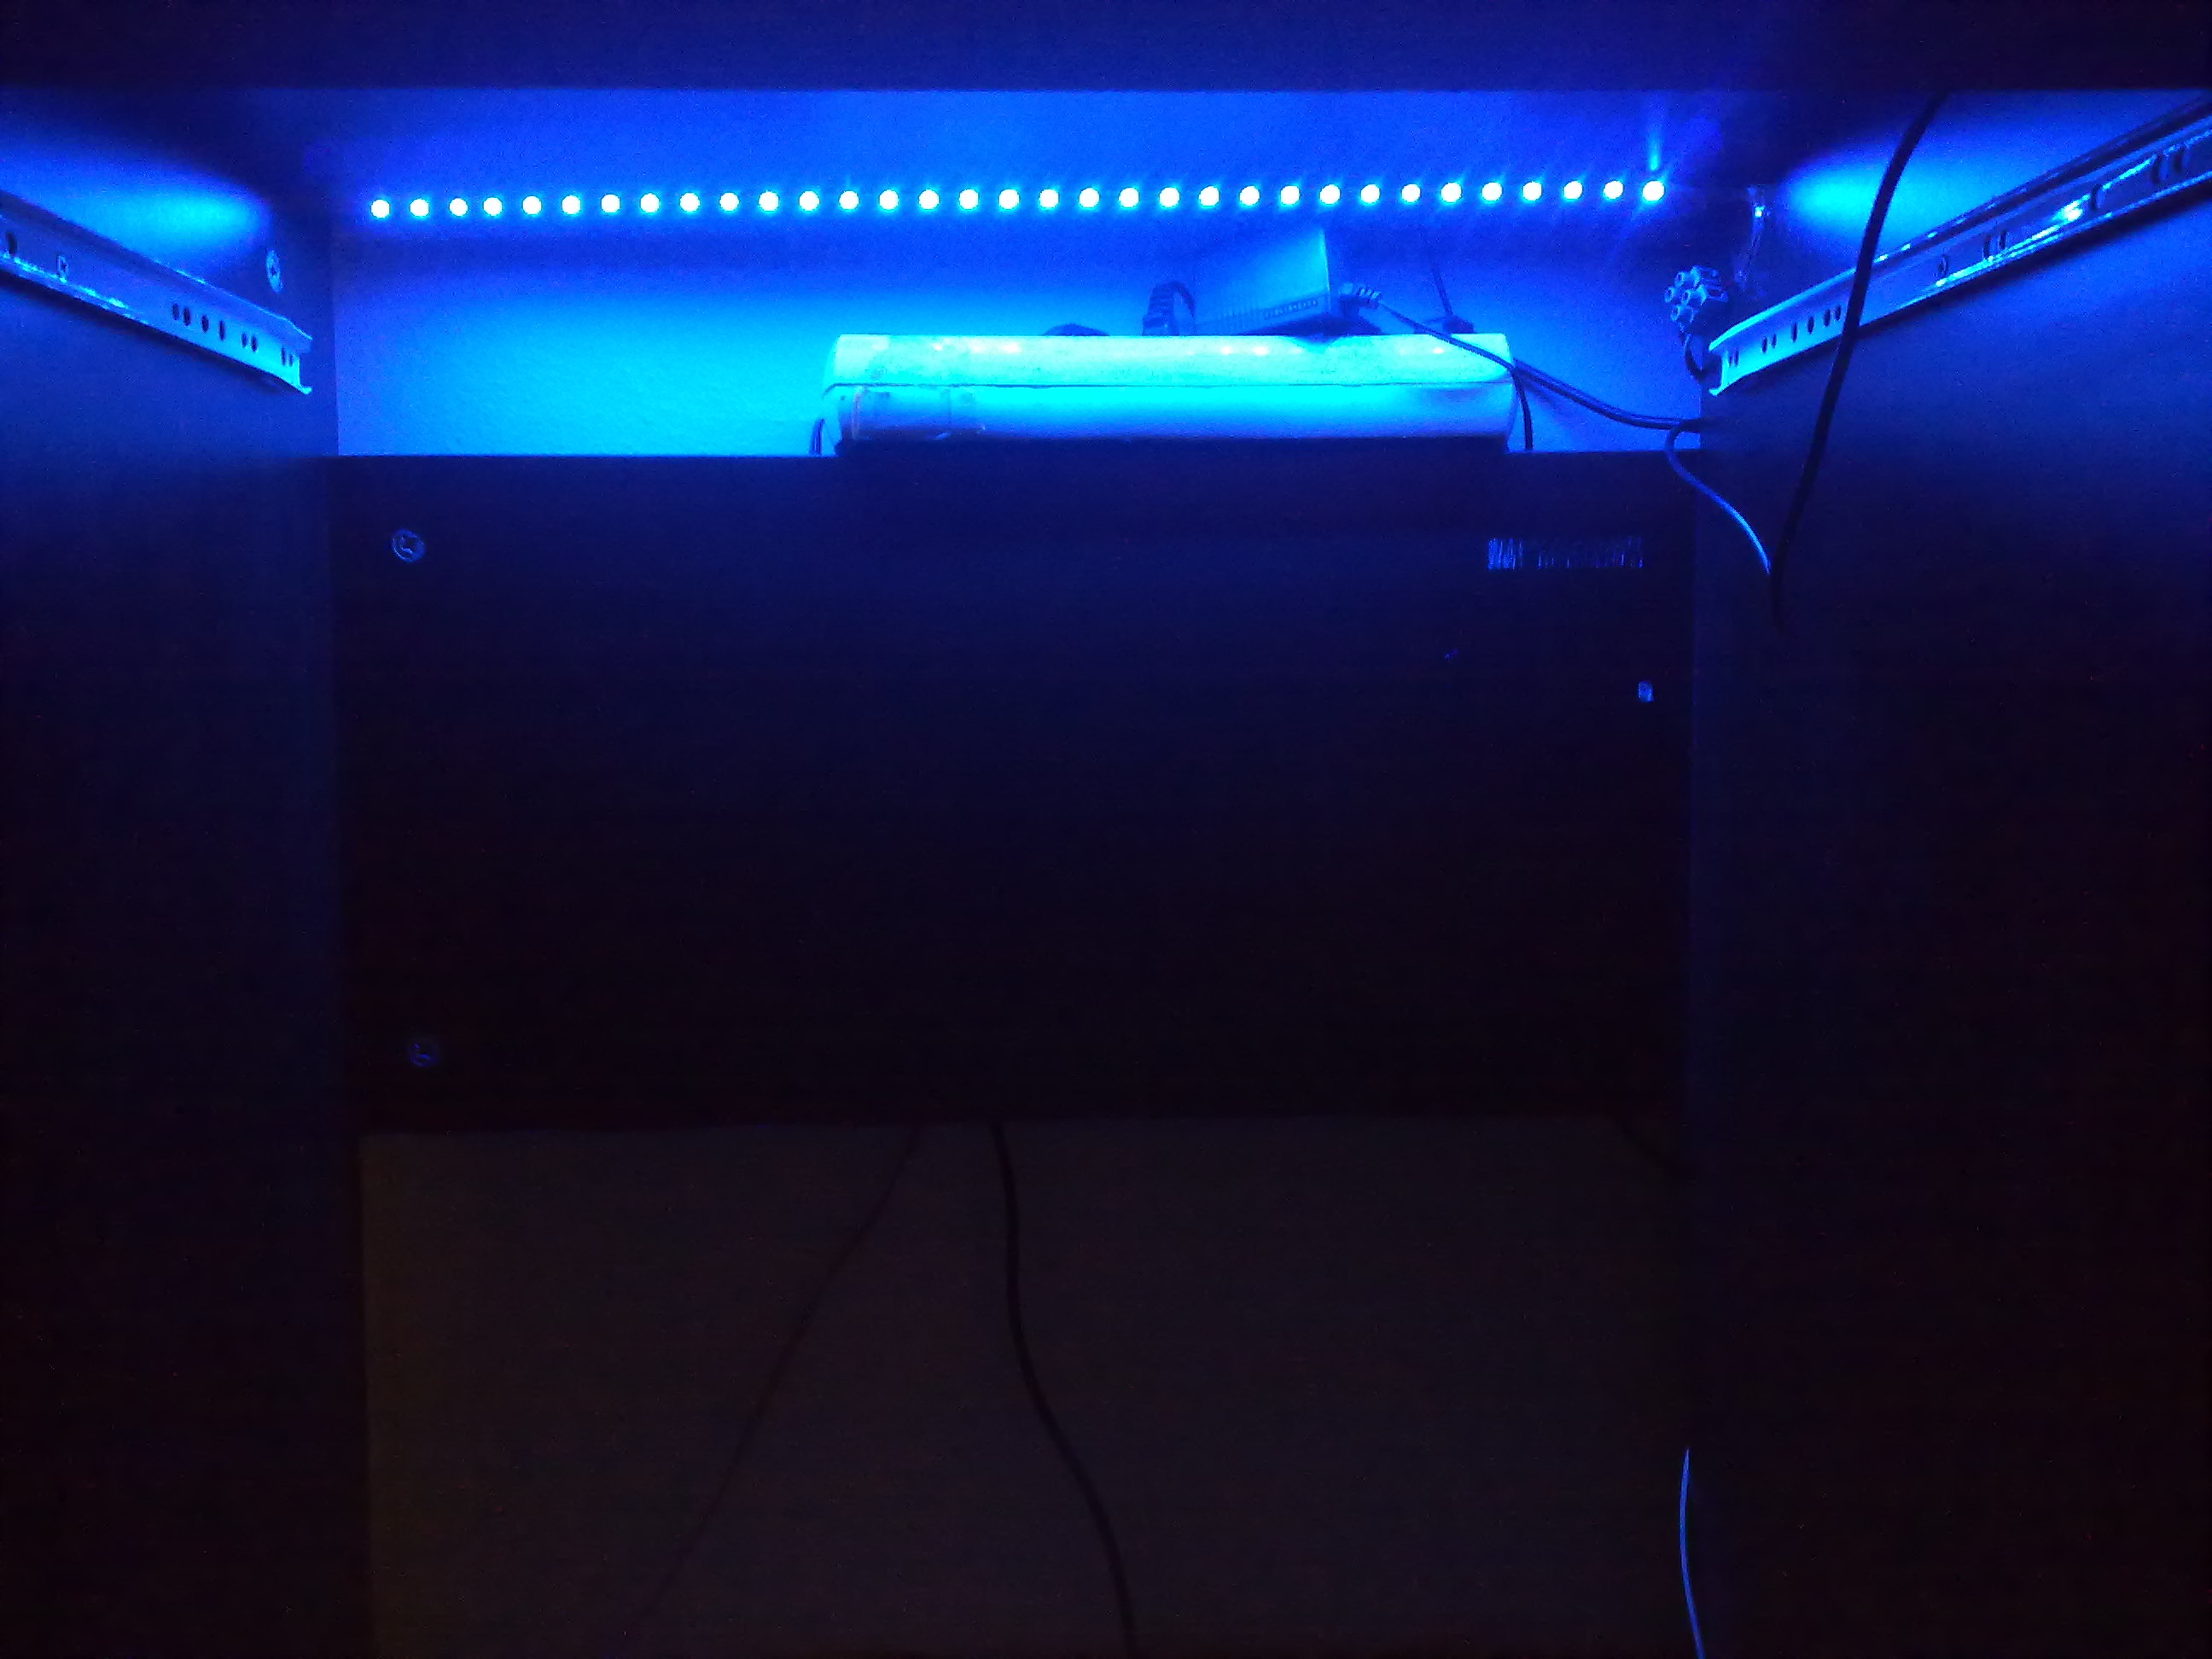  mütevazı bigisayar masası ışıklandırmam(mavi şerit led)(video eklendi)